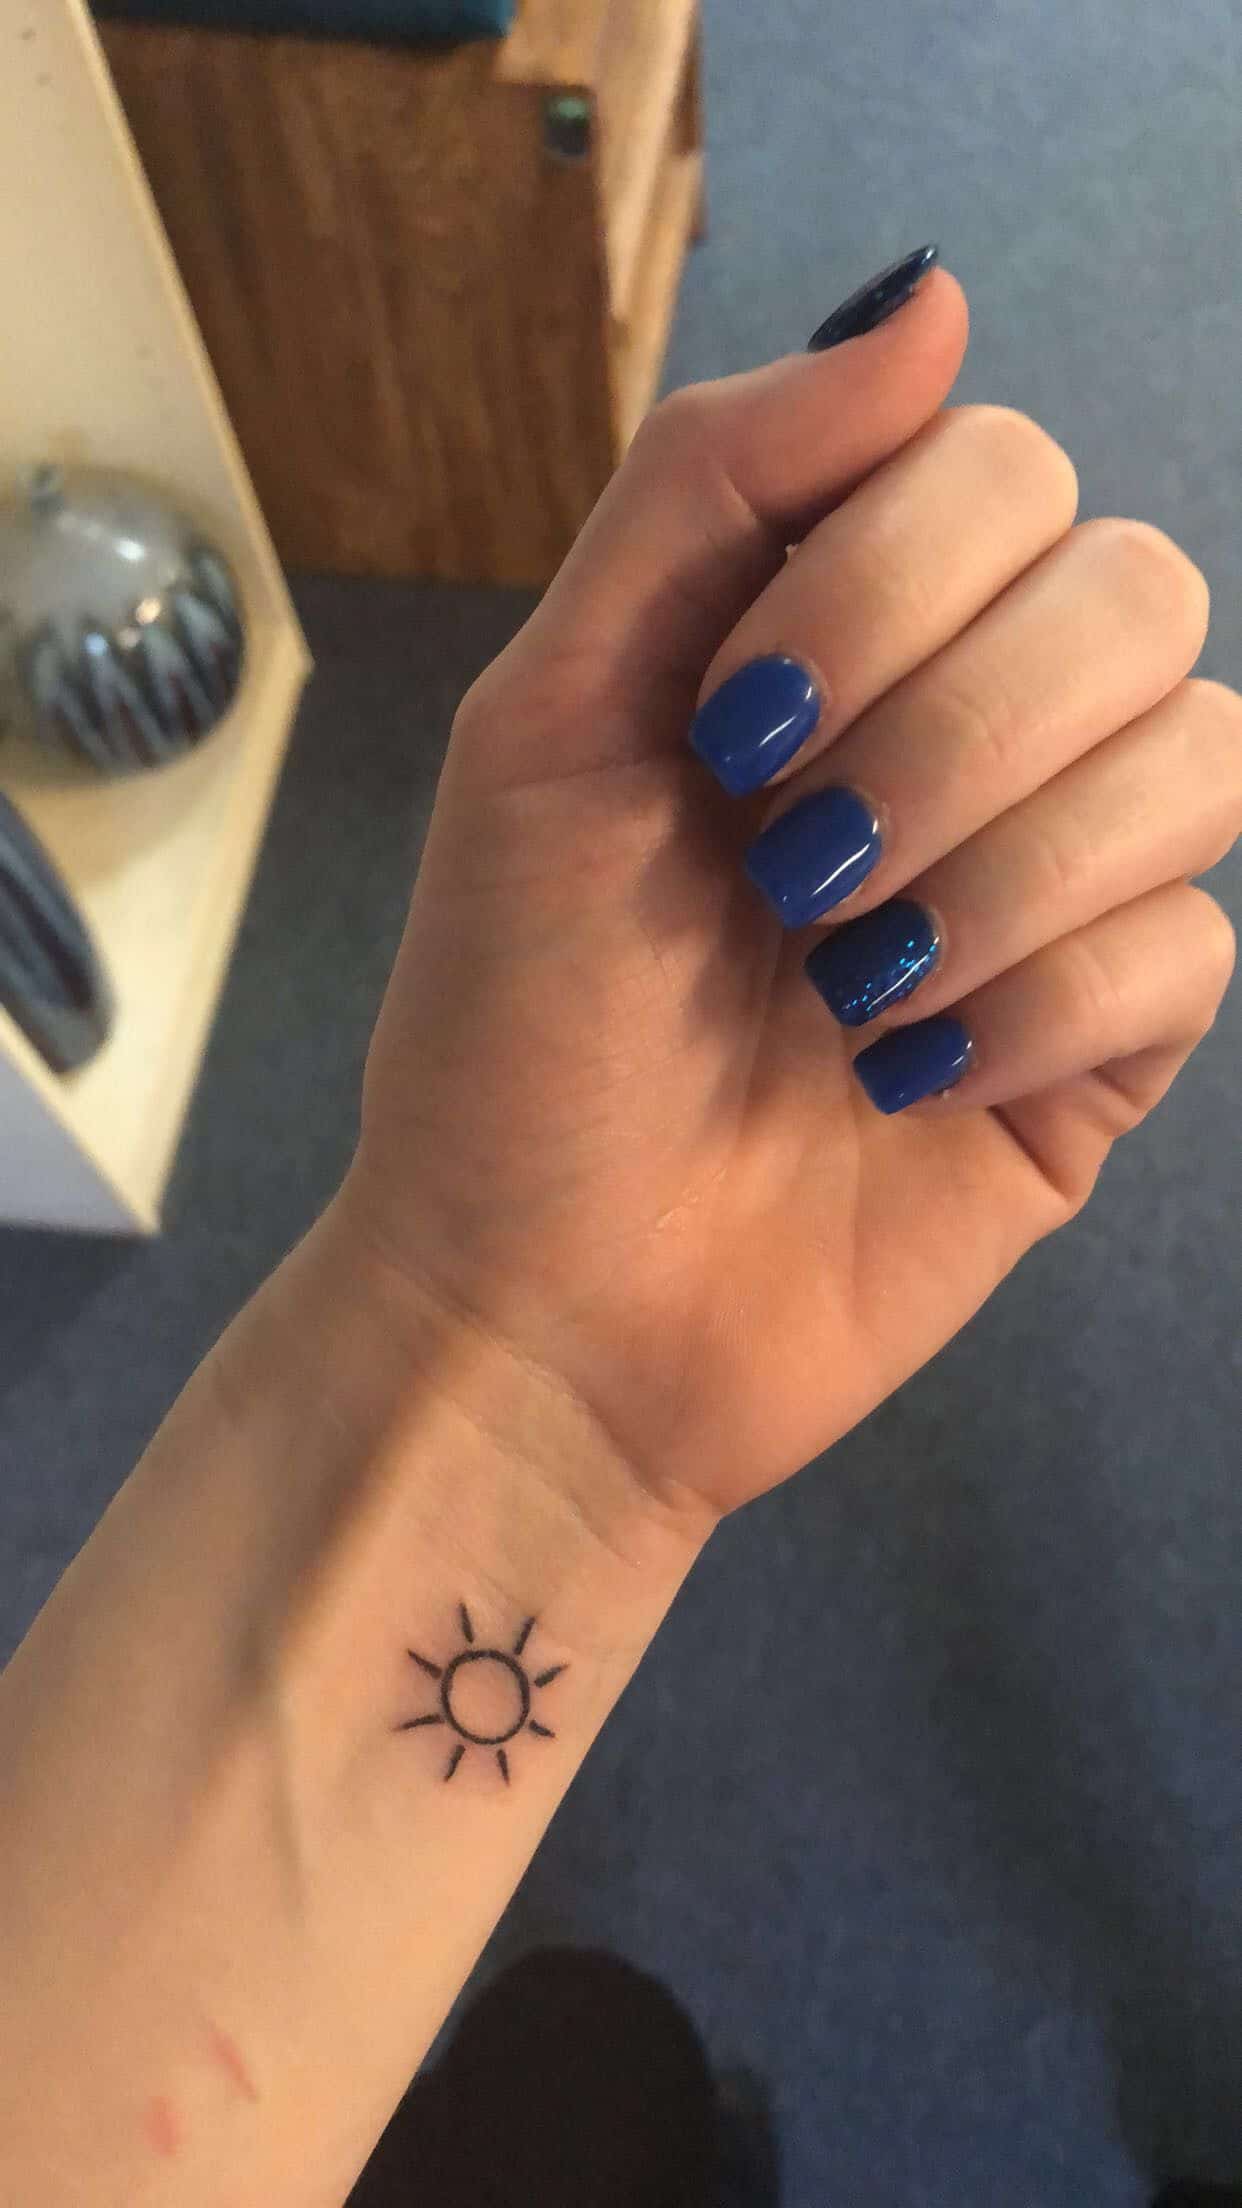 Simple Sun tattoo idea for the wrist